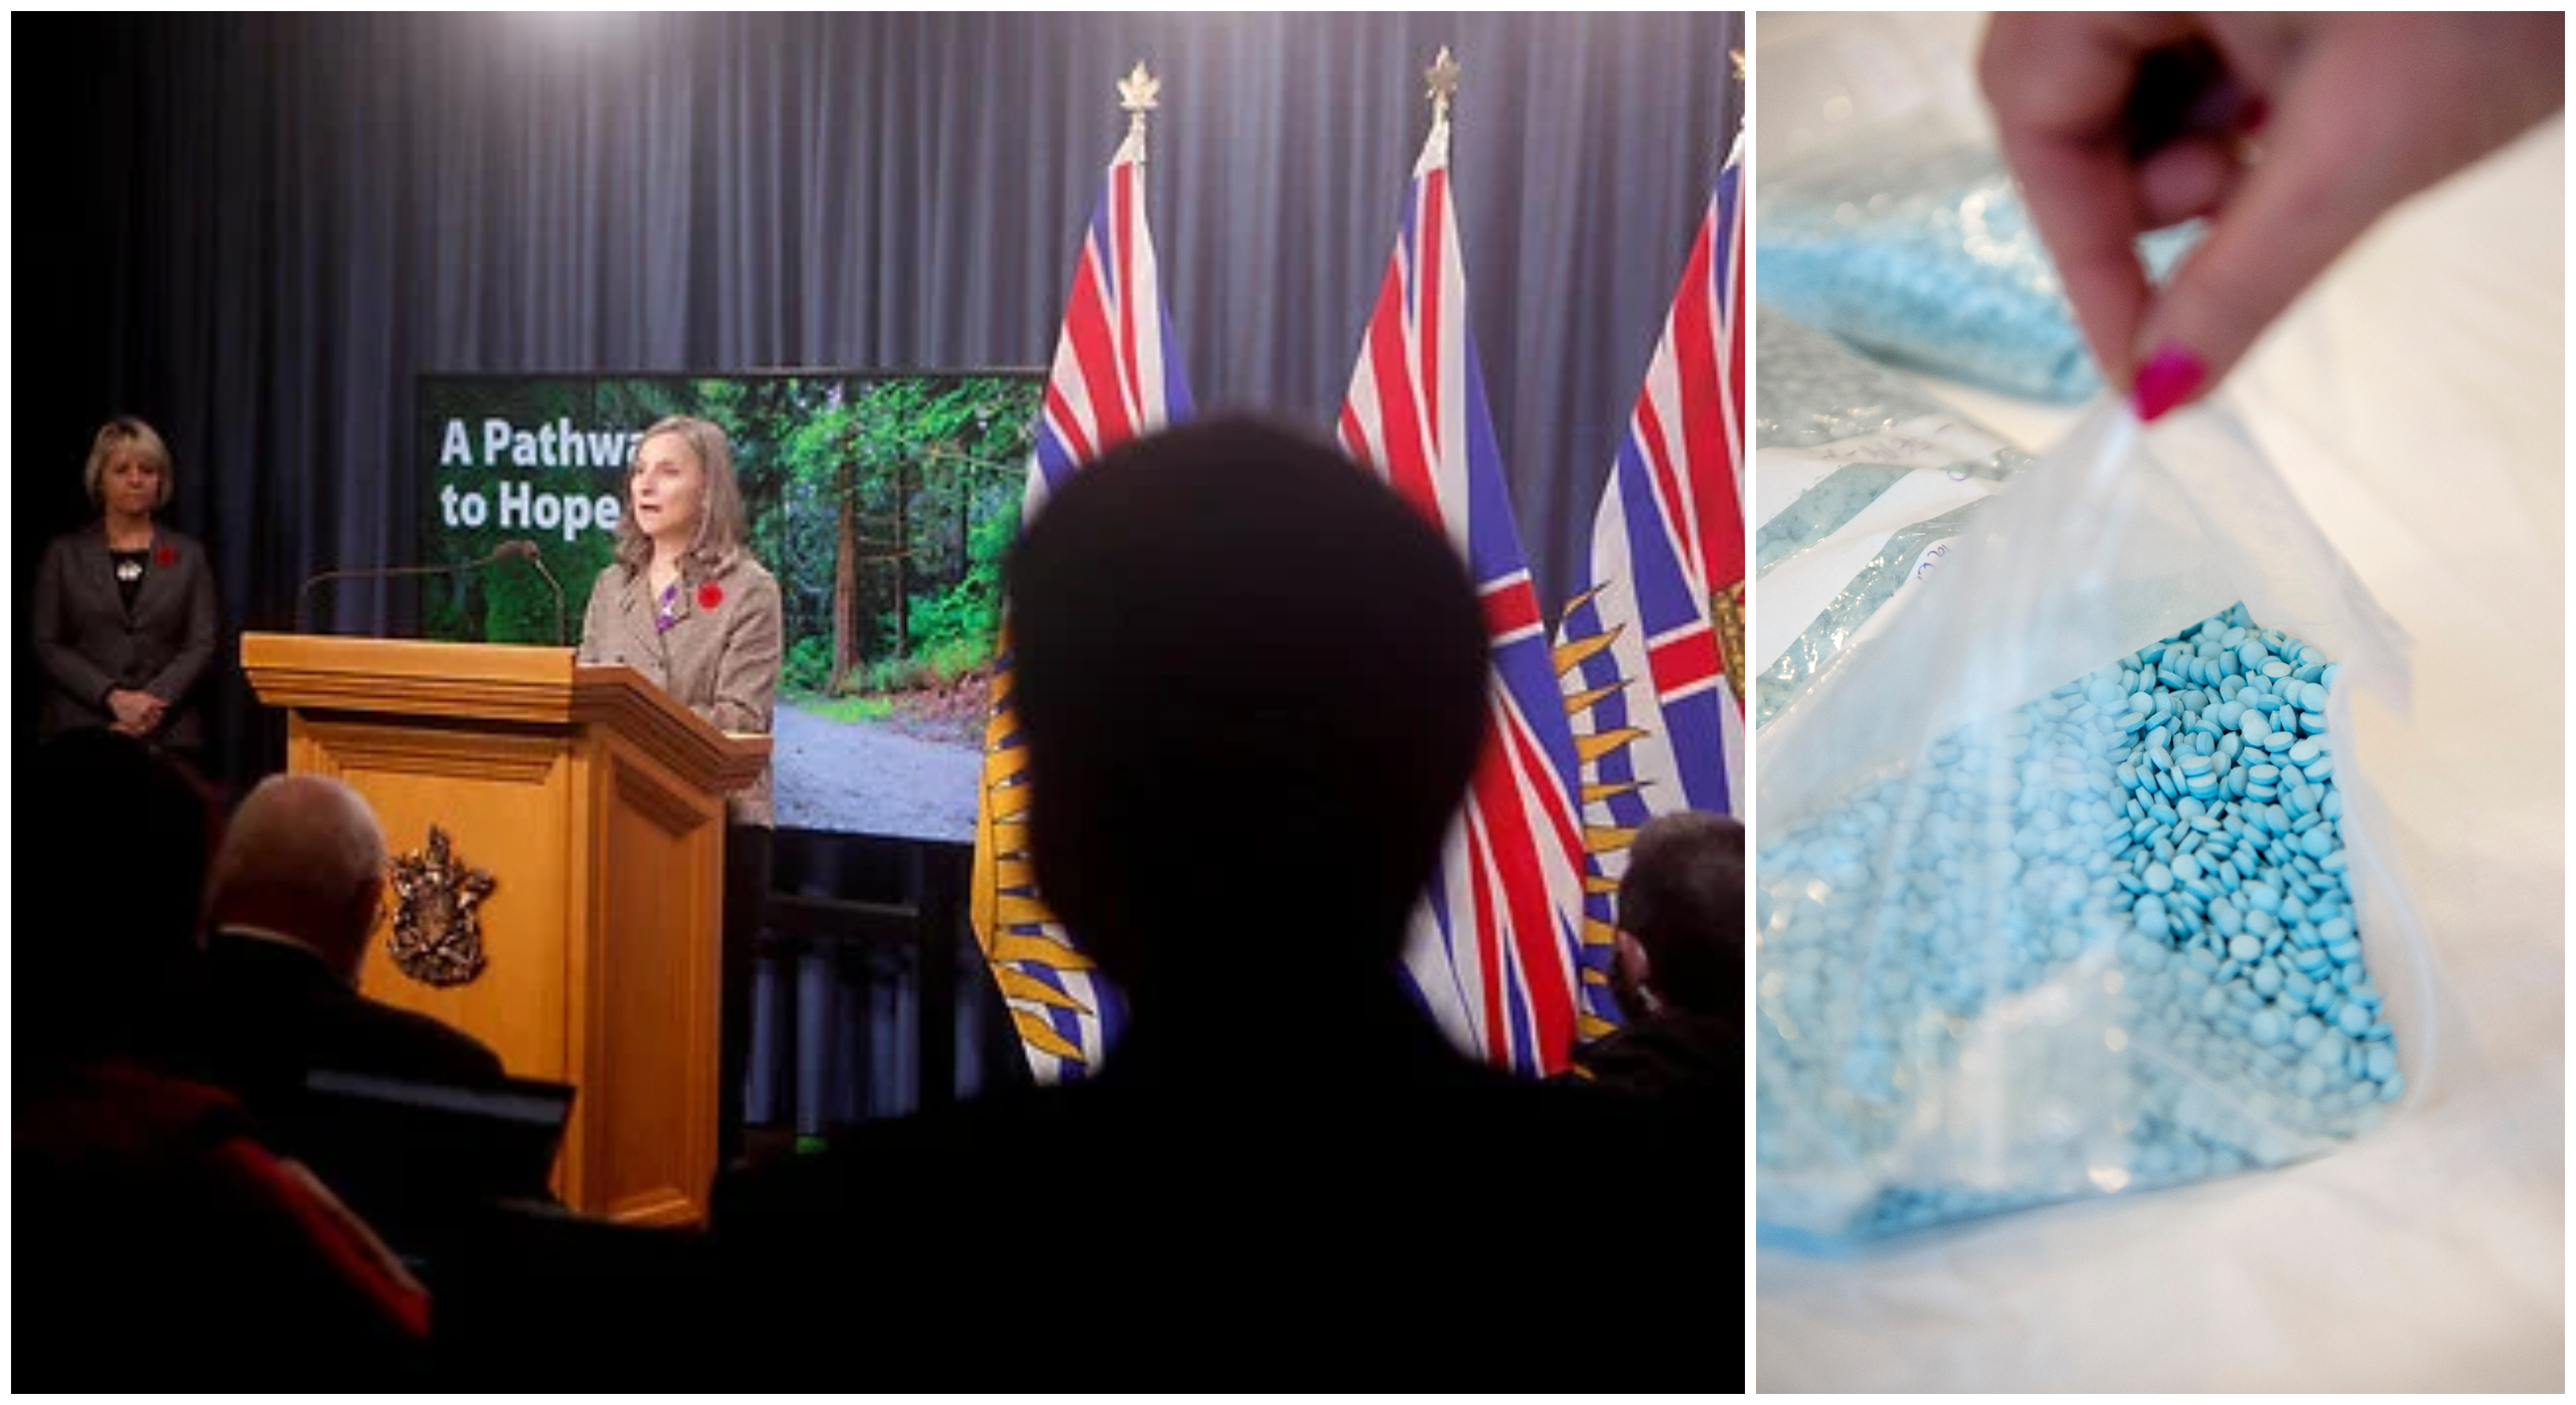 Det är numera lagligt att inneha mindre mängder narkotika i kanadensiska British Columbia